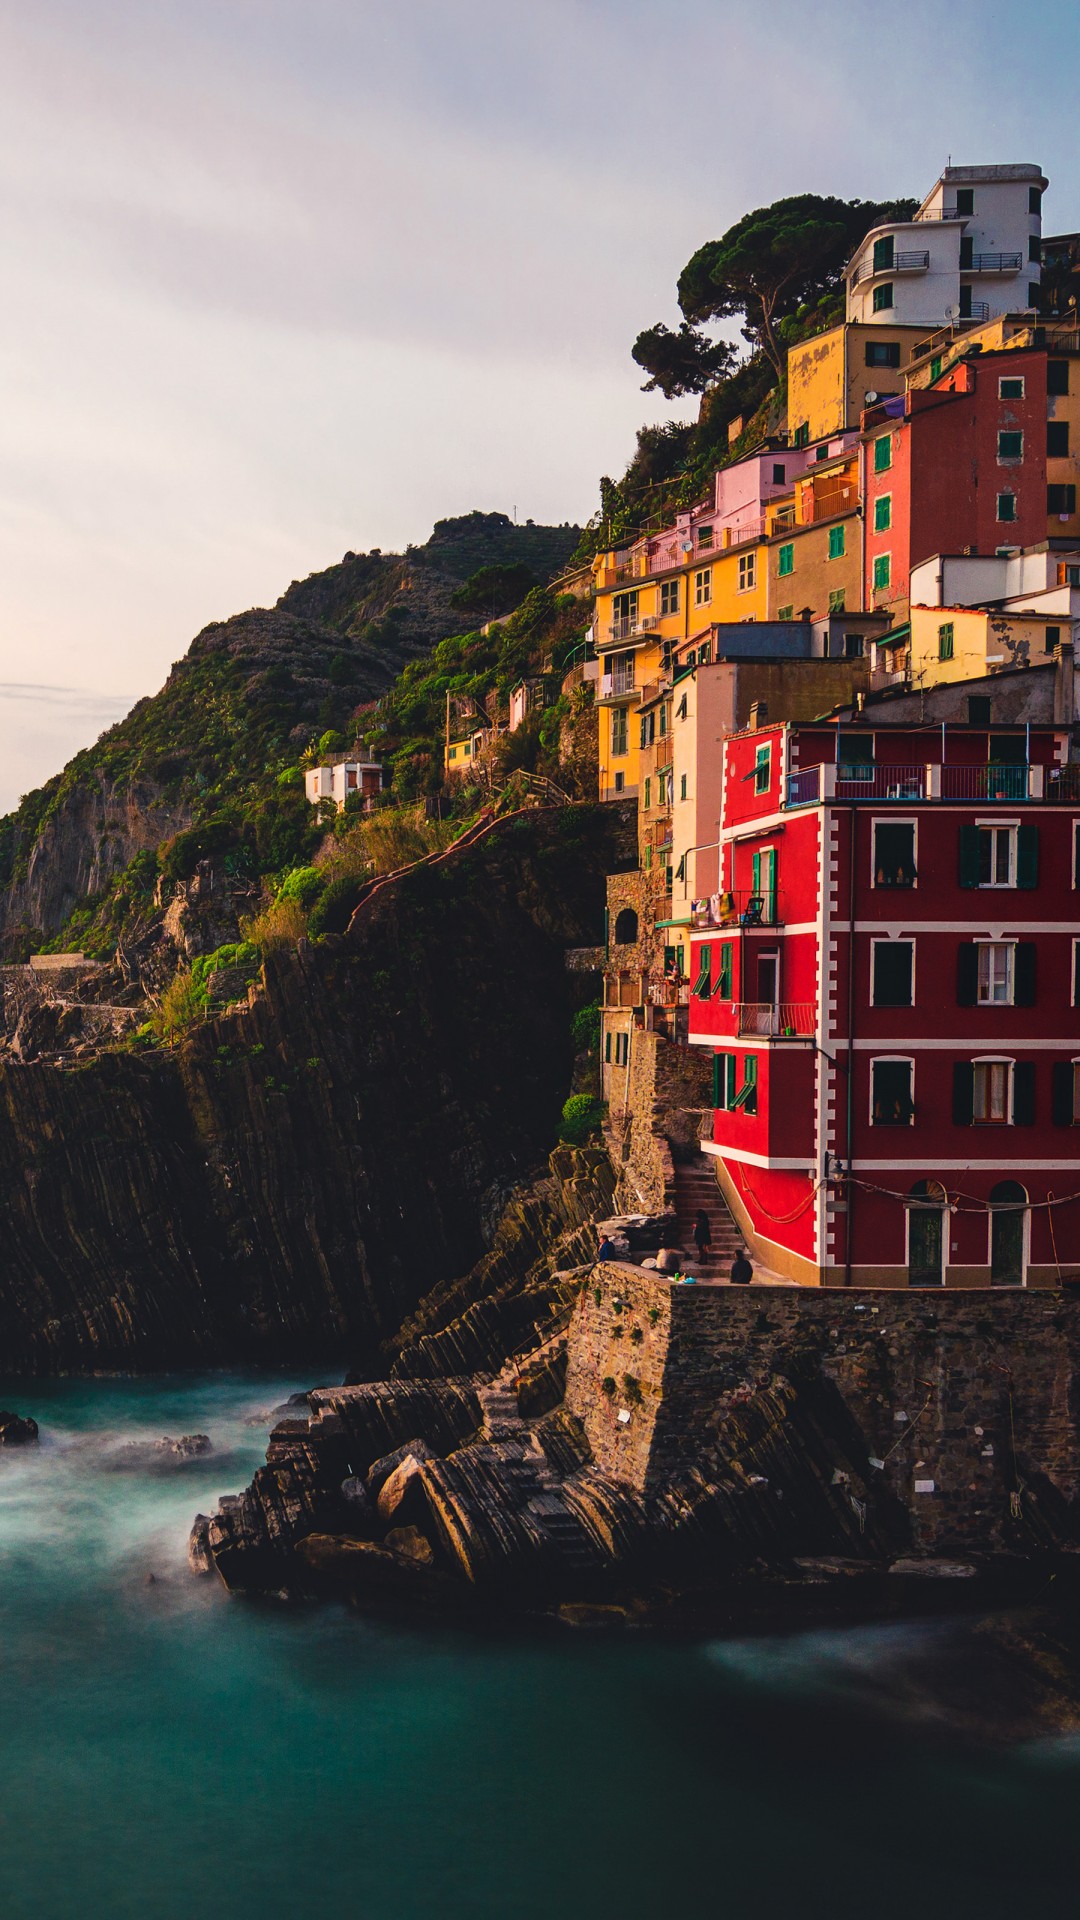 Riomaggiore village is one of 5 villages of Cinque Terre in the picturesque Italian Riviera Coastlin by Matteo Ripamonti